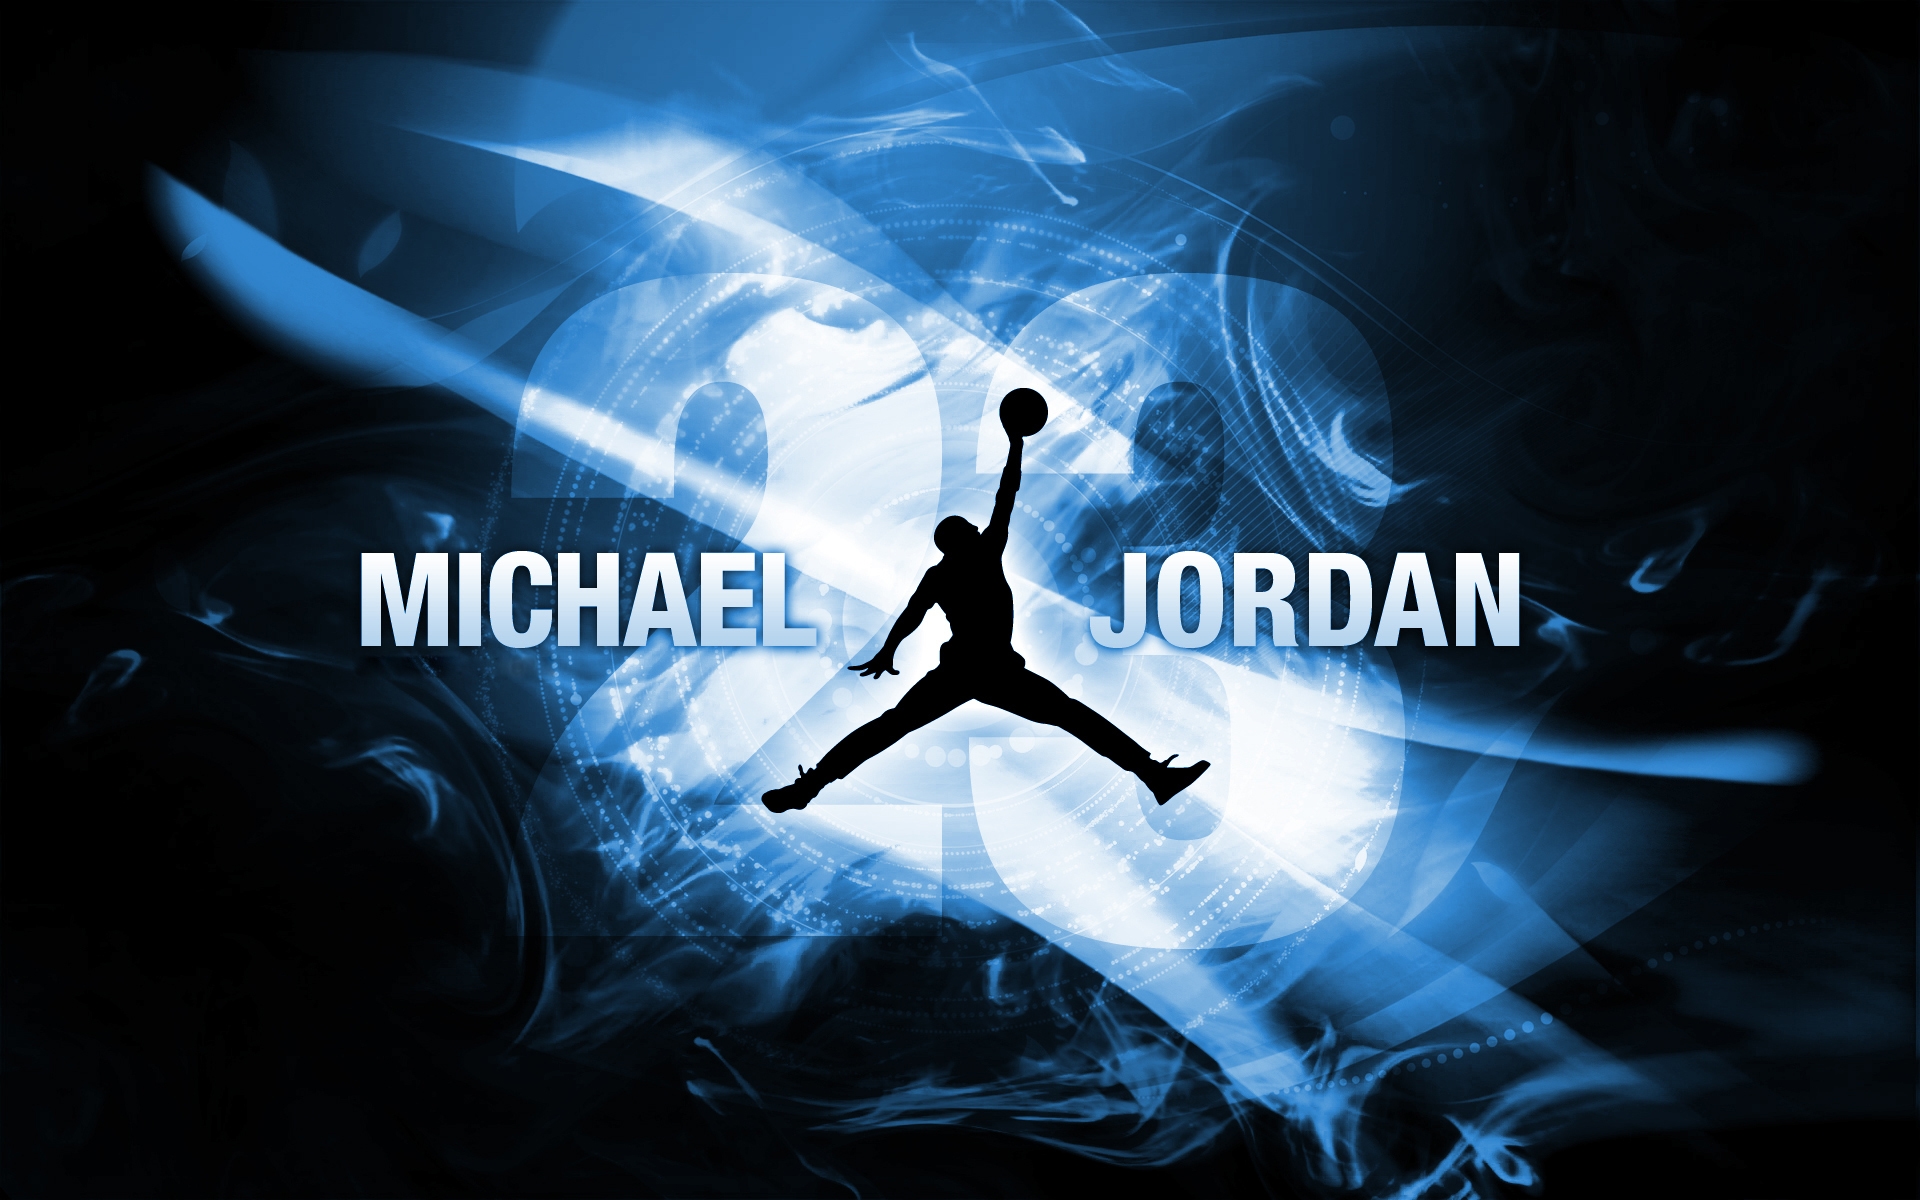 Michael Jordan Wallpaper Pictures Image